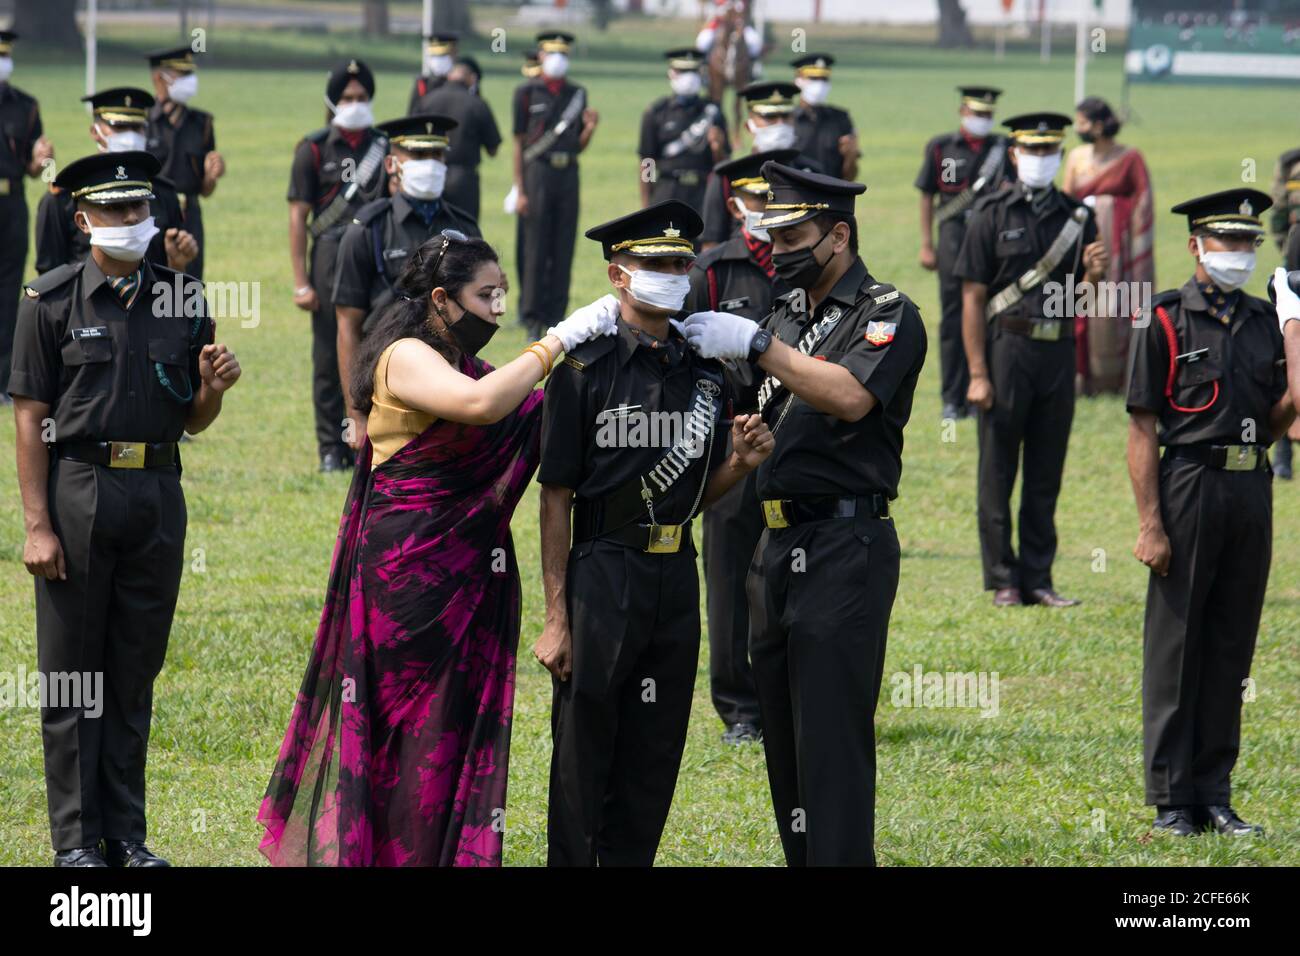 Dehradun, Uttarakhand/India - Agosto 15 2020: Ufficiale dell'esercito appena commissionato ottenendo il grado dai suoi genitori e ufficiale superiore, indossando la maschera. Foto Stock